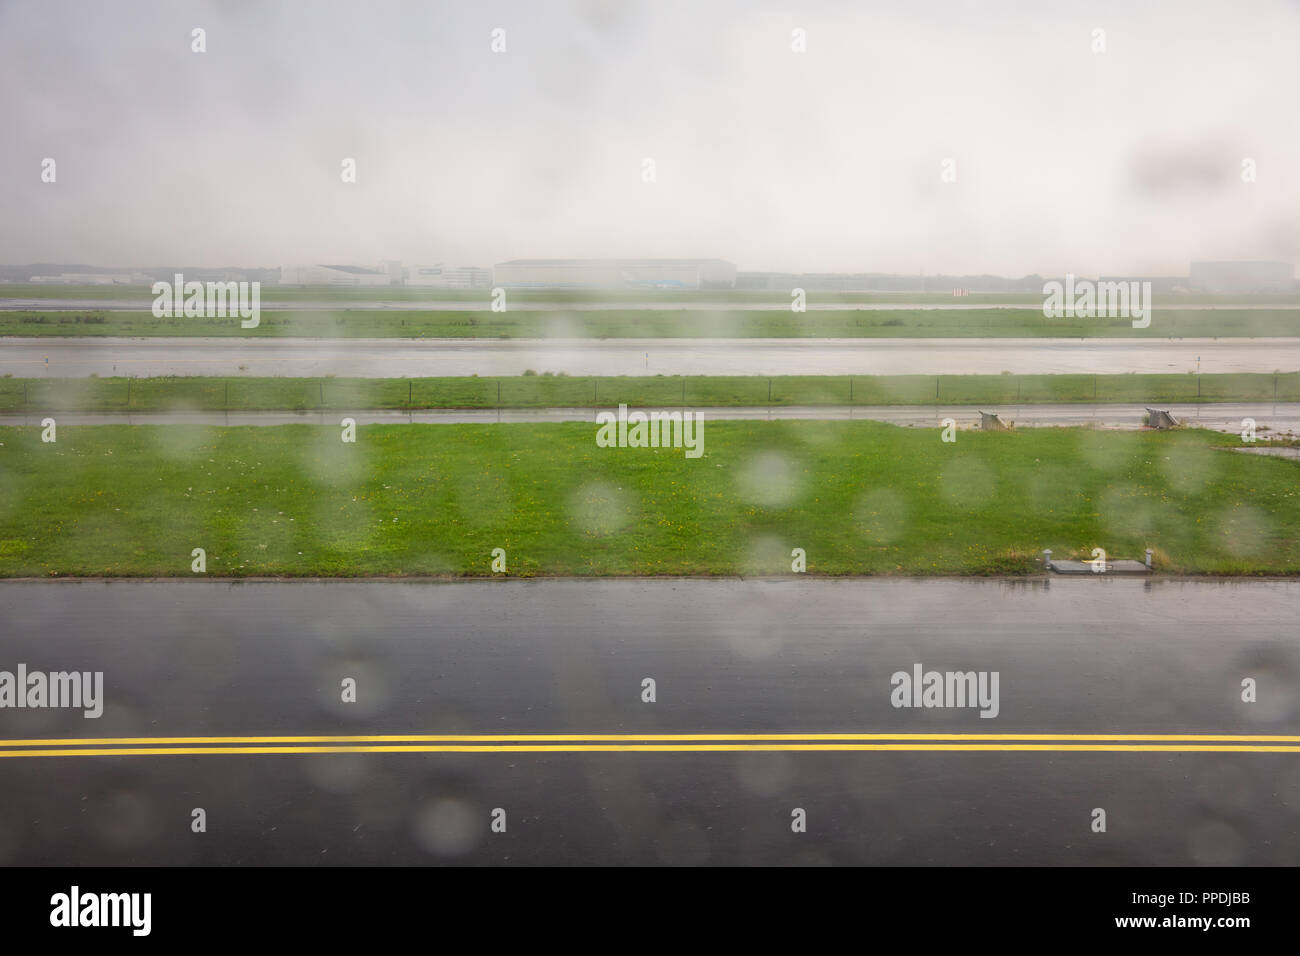 Landung am Flughafen Rotterdam Start- und Landebahn an einem regnerischen Tag, Regentropfen auf der Ebene Fenster, Hintergrund. Stockfoto